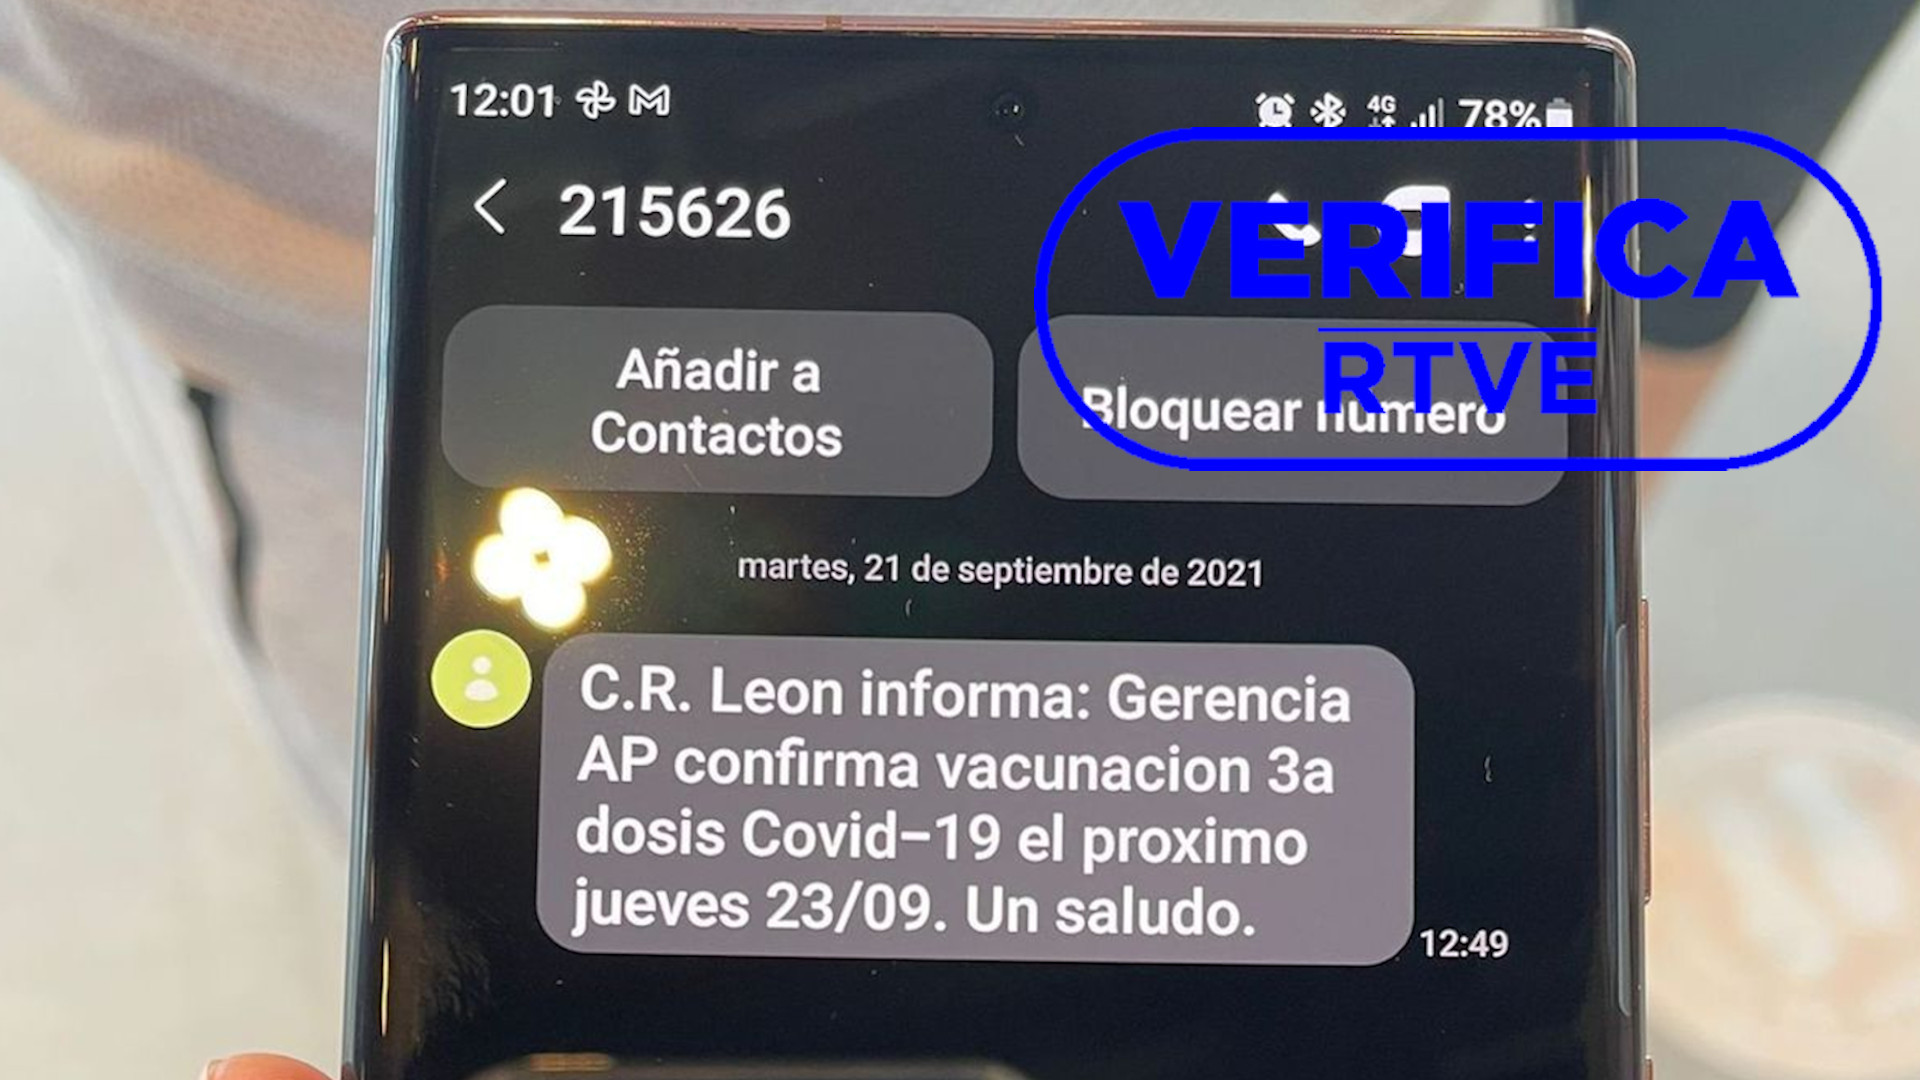 Imagen enviada por la Junta de Castilla y León en septiembre para advertir de un mensaje que estaba generando confusión sobre la tercera dosis en León, con el sello azul de VerificaRTVE